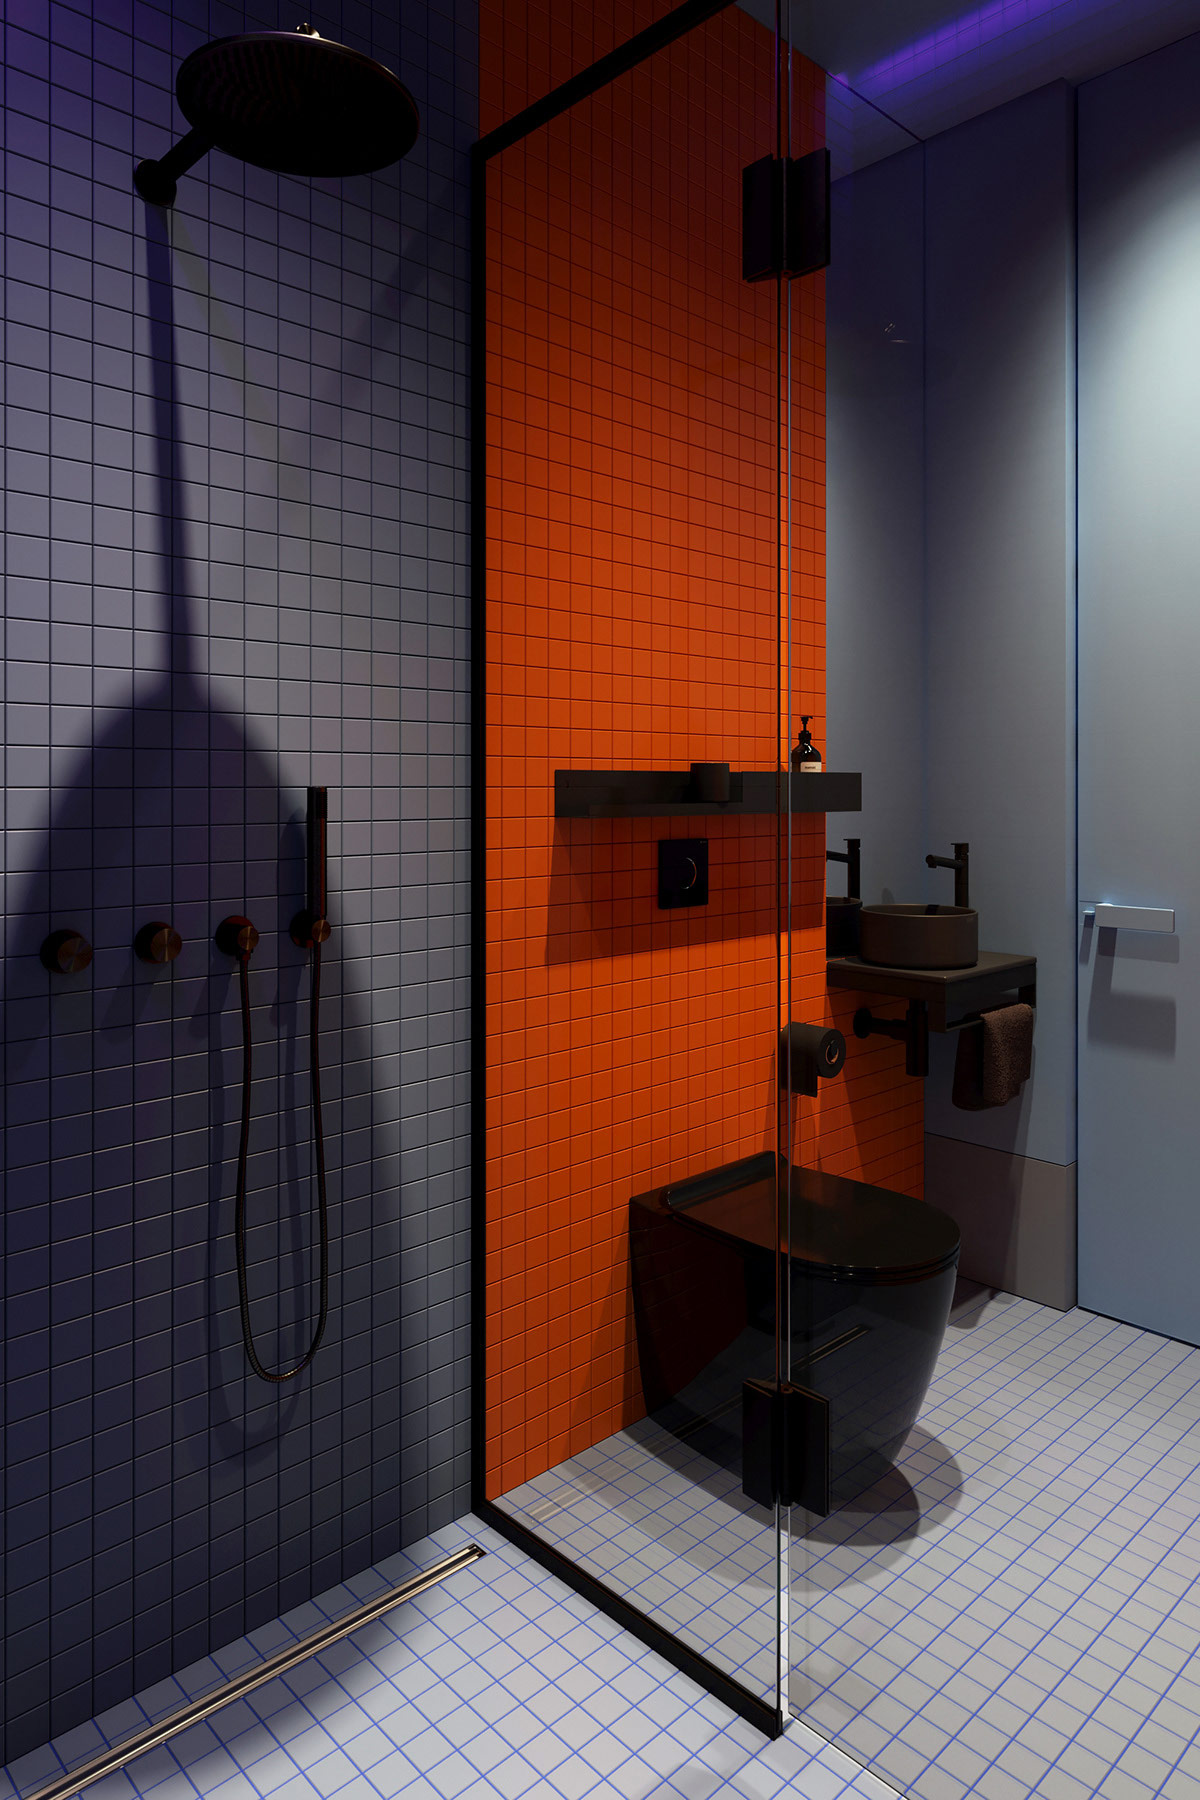 Phòng tắm nổi bần bật với bức tường màu xám, cam và sàn nhà màu trắng với keo chà ron màu xanh lam đẹp mắt. Cửa kính trong suốt phân vùng buồng tắm đứng và toilet một nhẹ nhàng và thông thoáng.